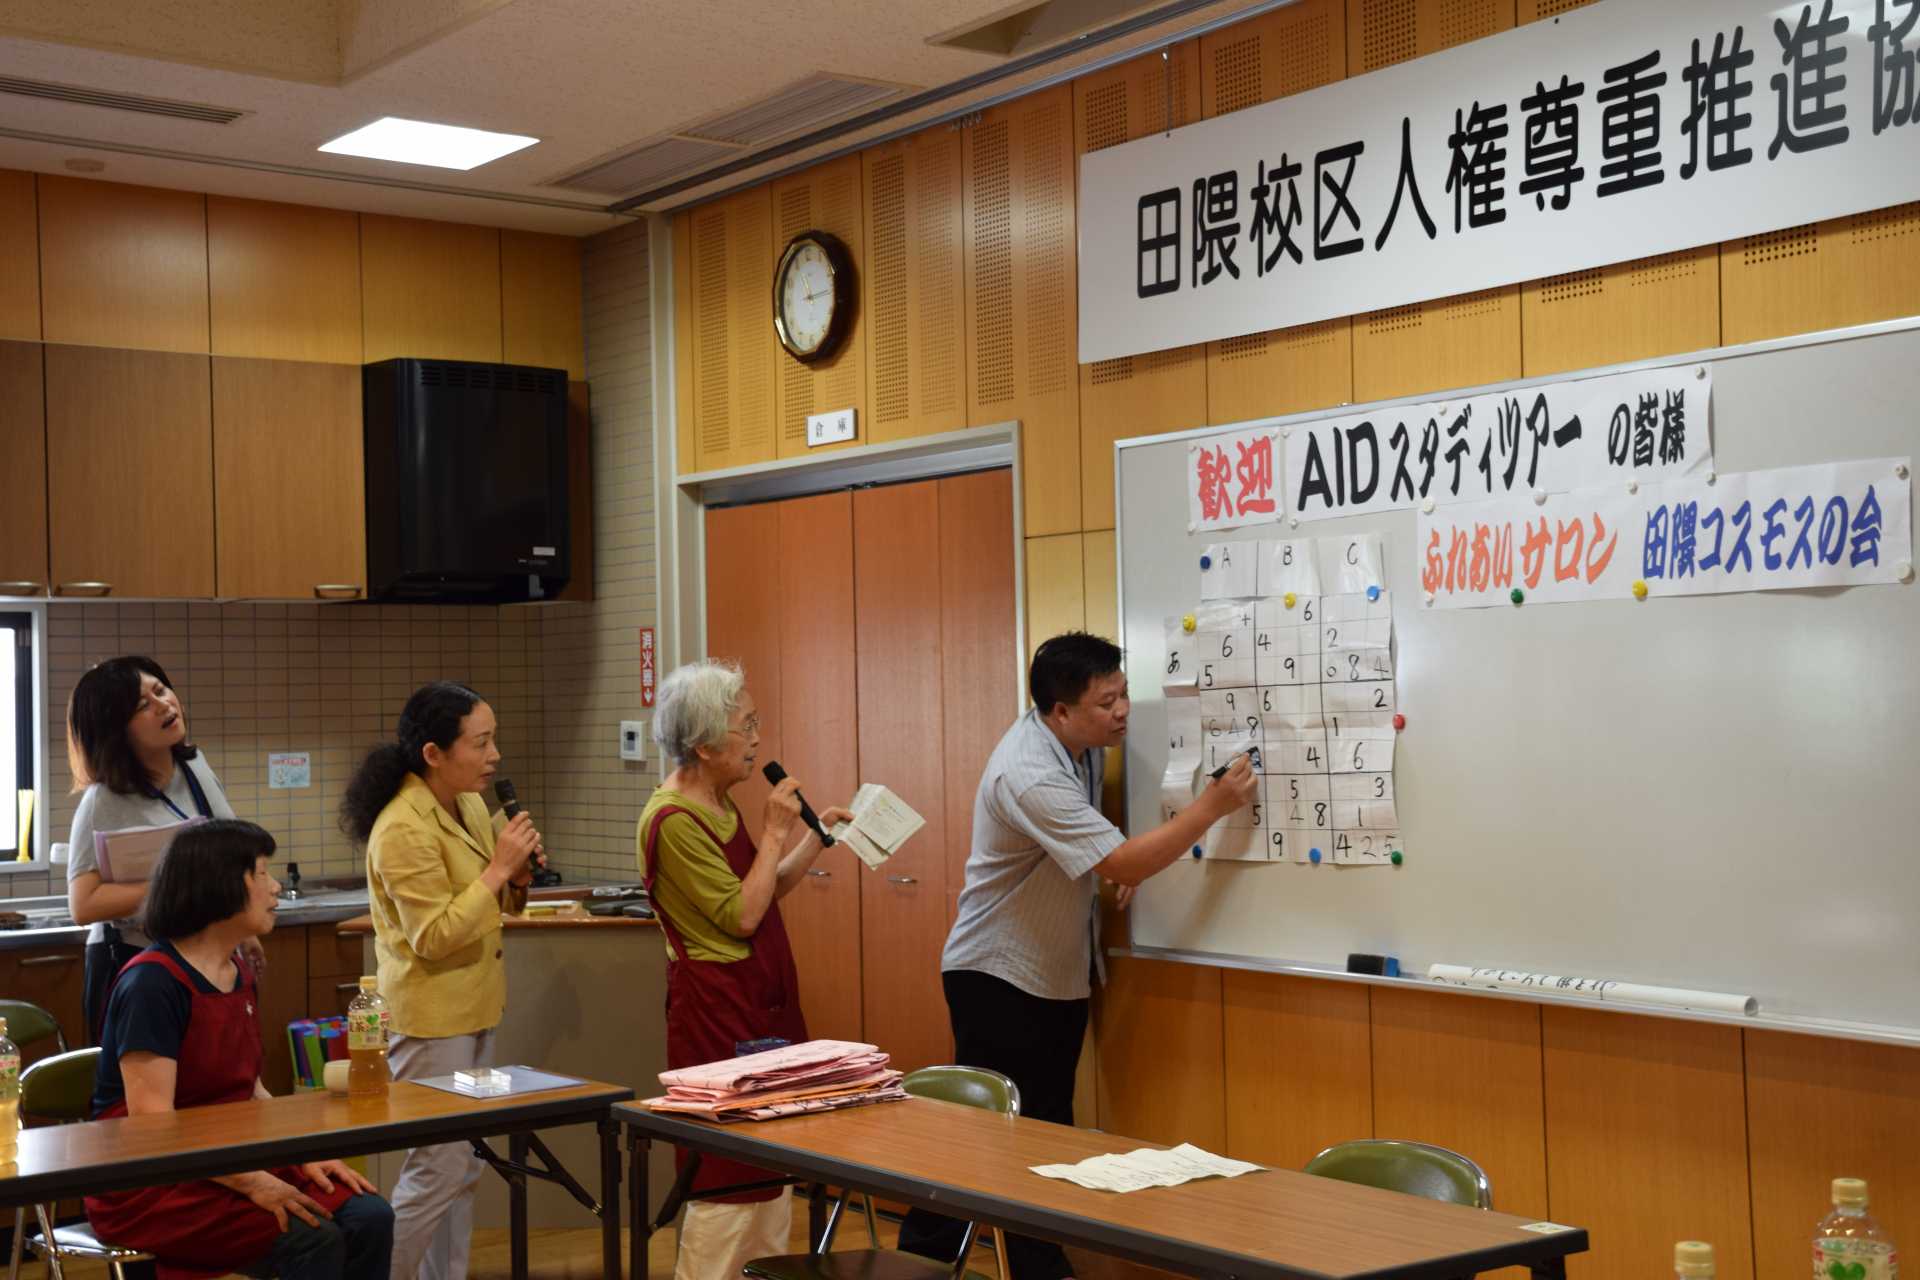 「田隈コスモスの会」を訪れ、介護予防のため数独ゲームに加わったタイからの参加者（写真右）